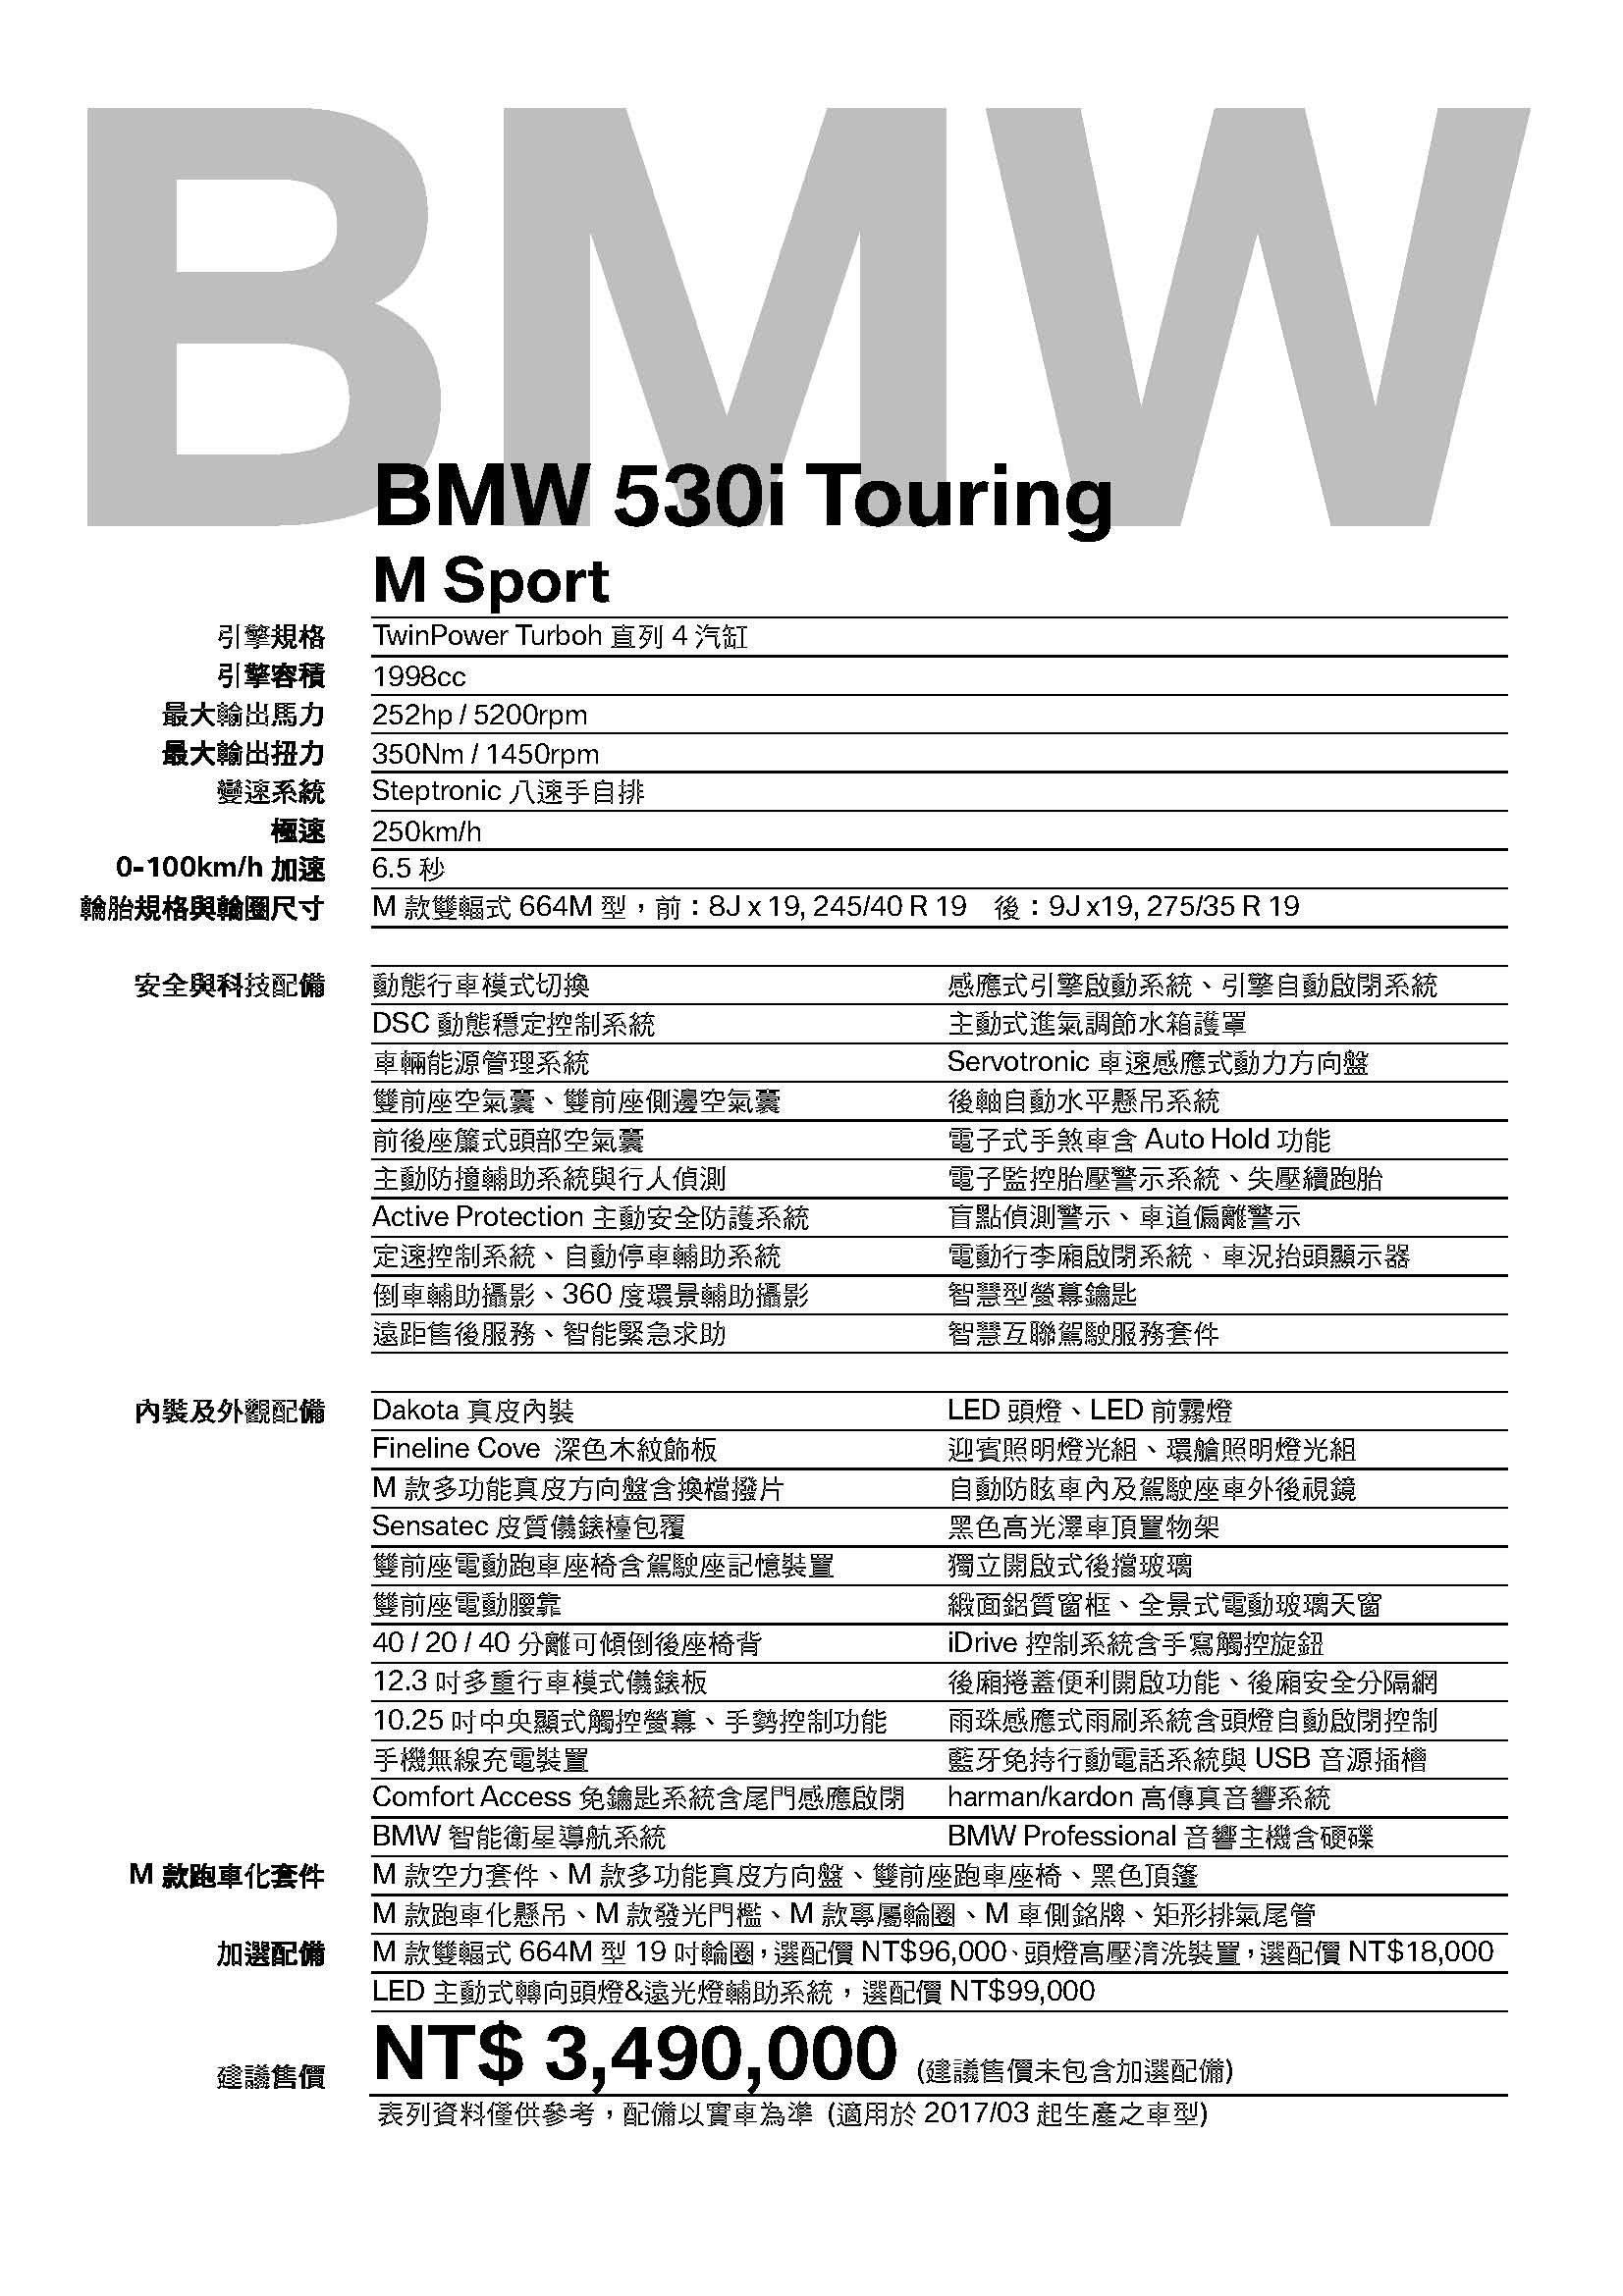 [車展表]530i Touring M Sport_2017-03__349